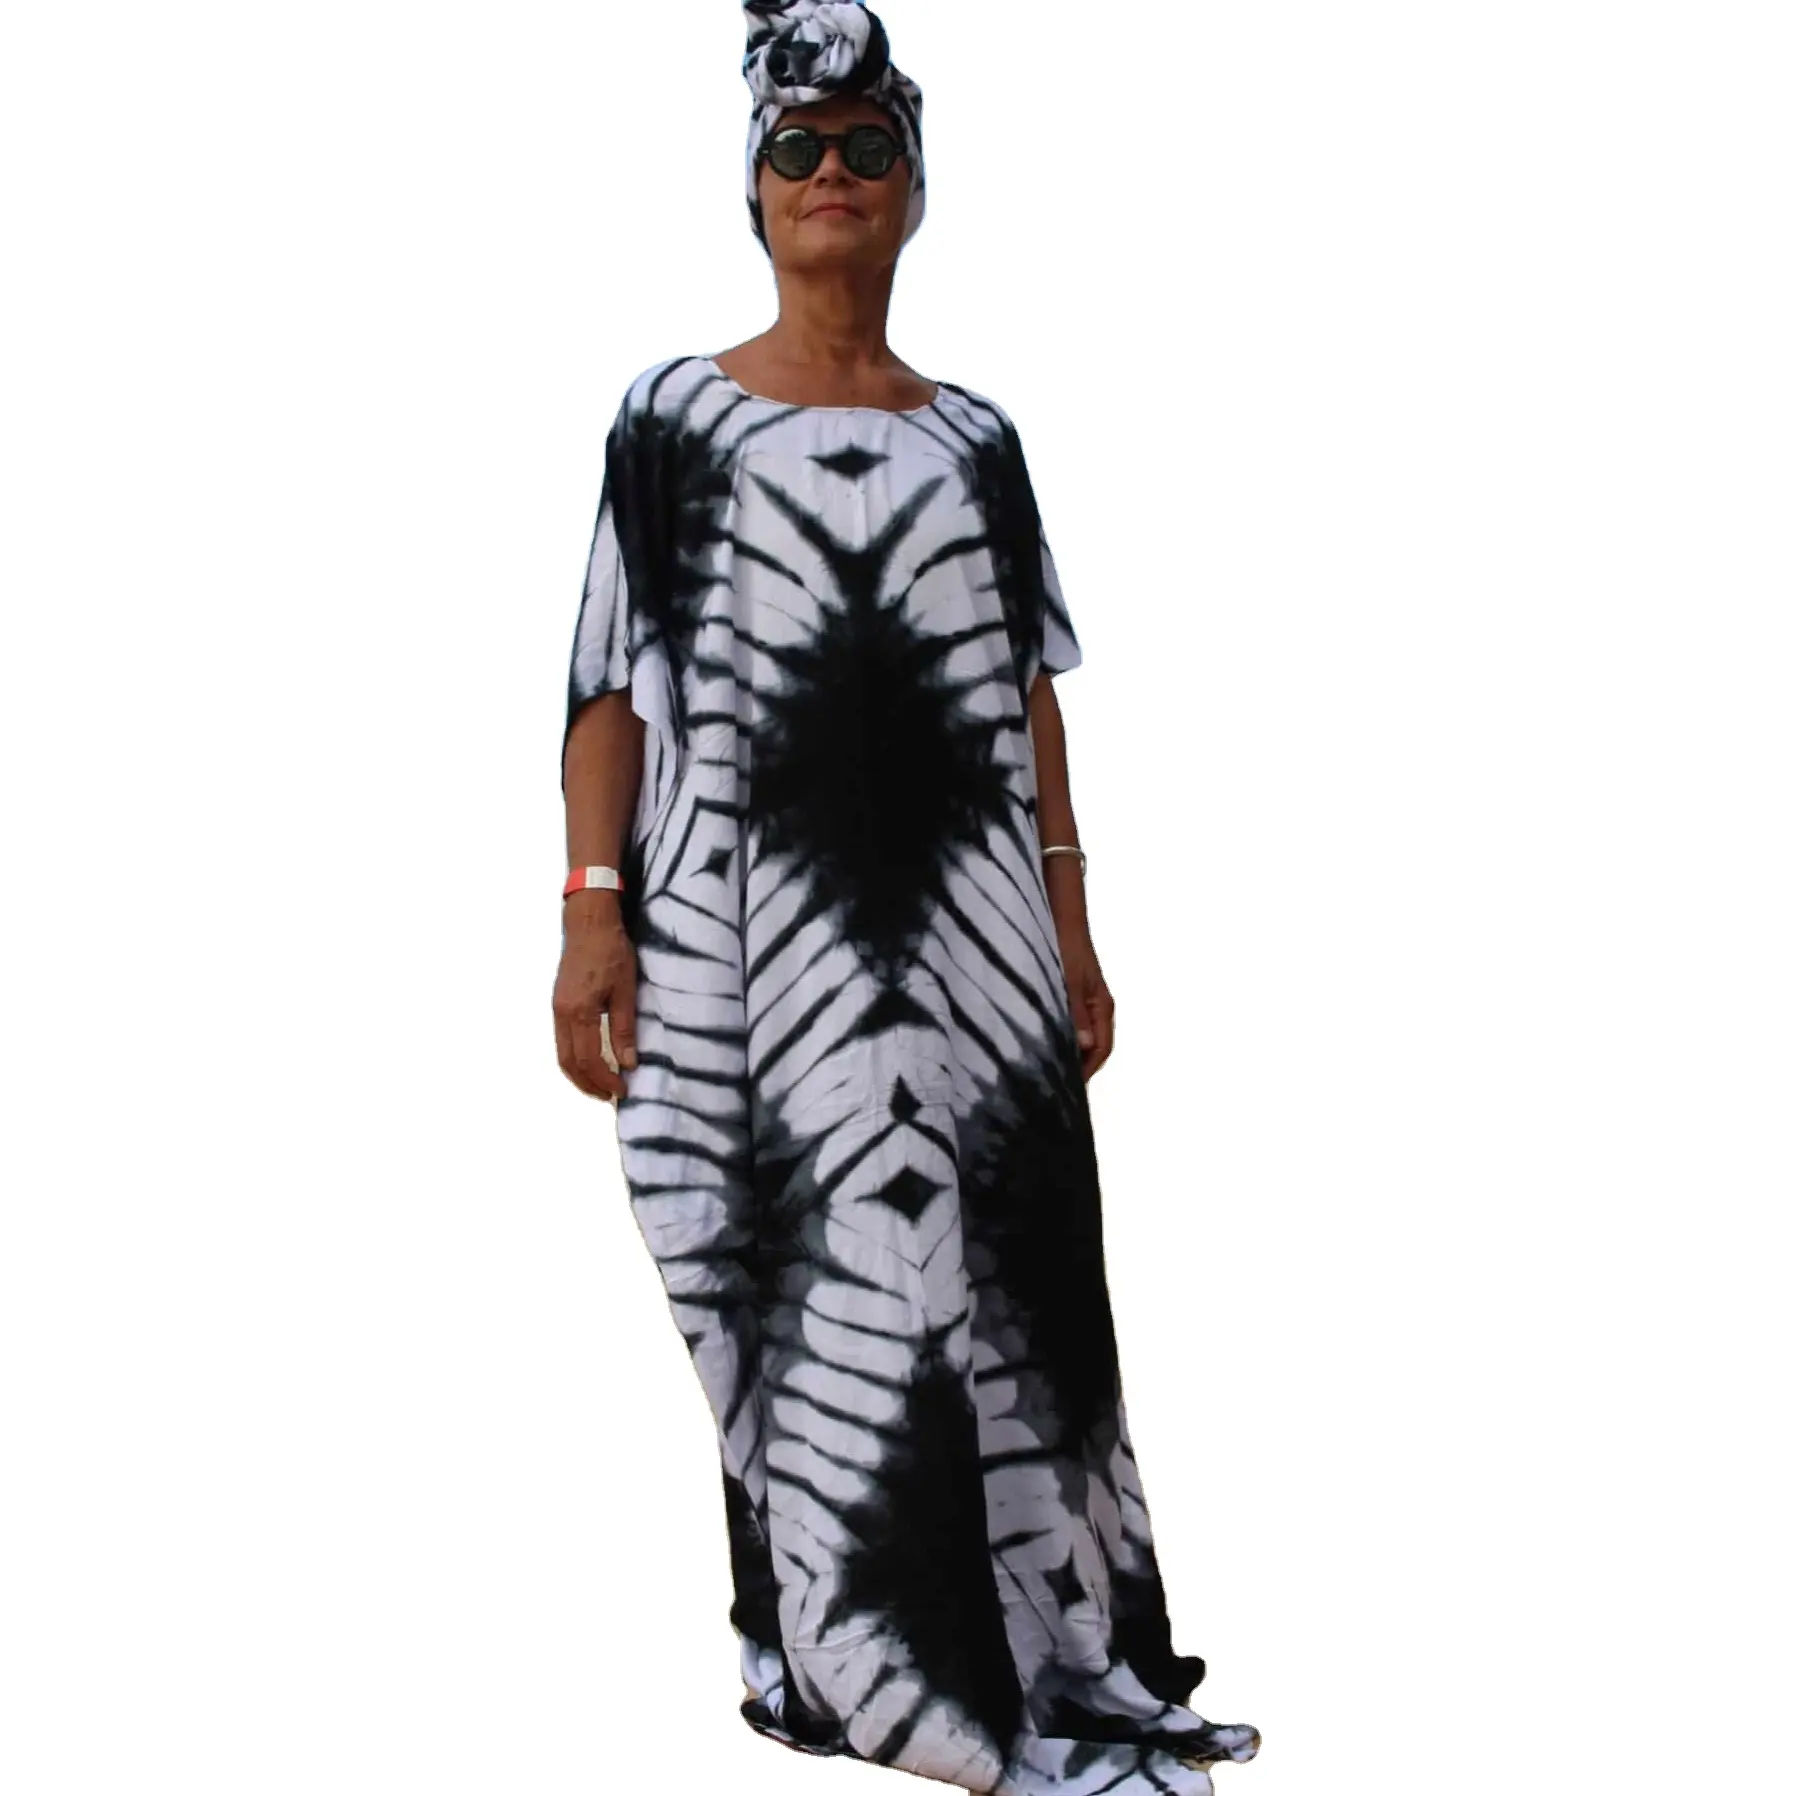 ऑनलाइन खरीदें महिलाओं के लिए रेयॉन समर बीच वियर कैज़ुअल टाई डाई डिज़ाइनर लड़कियों के लिए लंबी काफ्तान ड्रेस